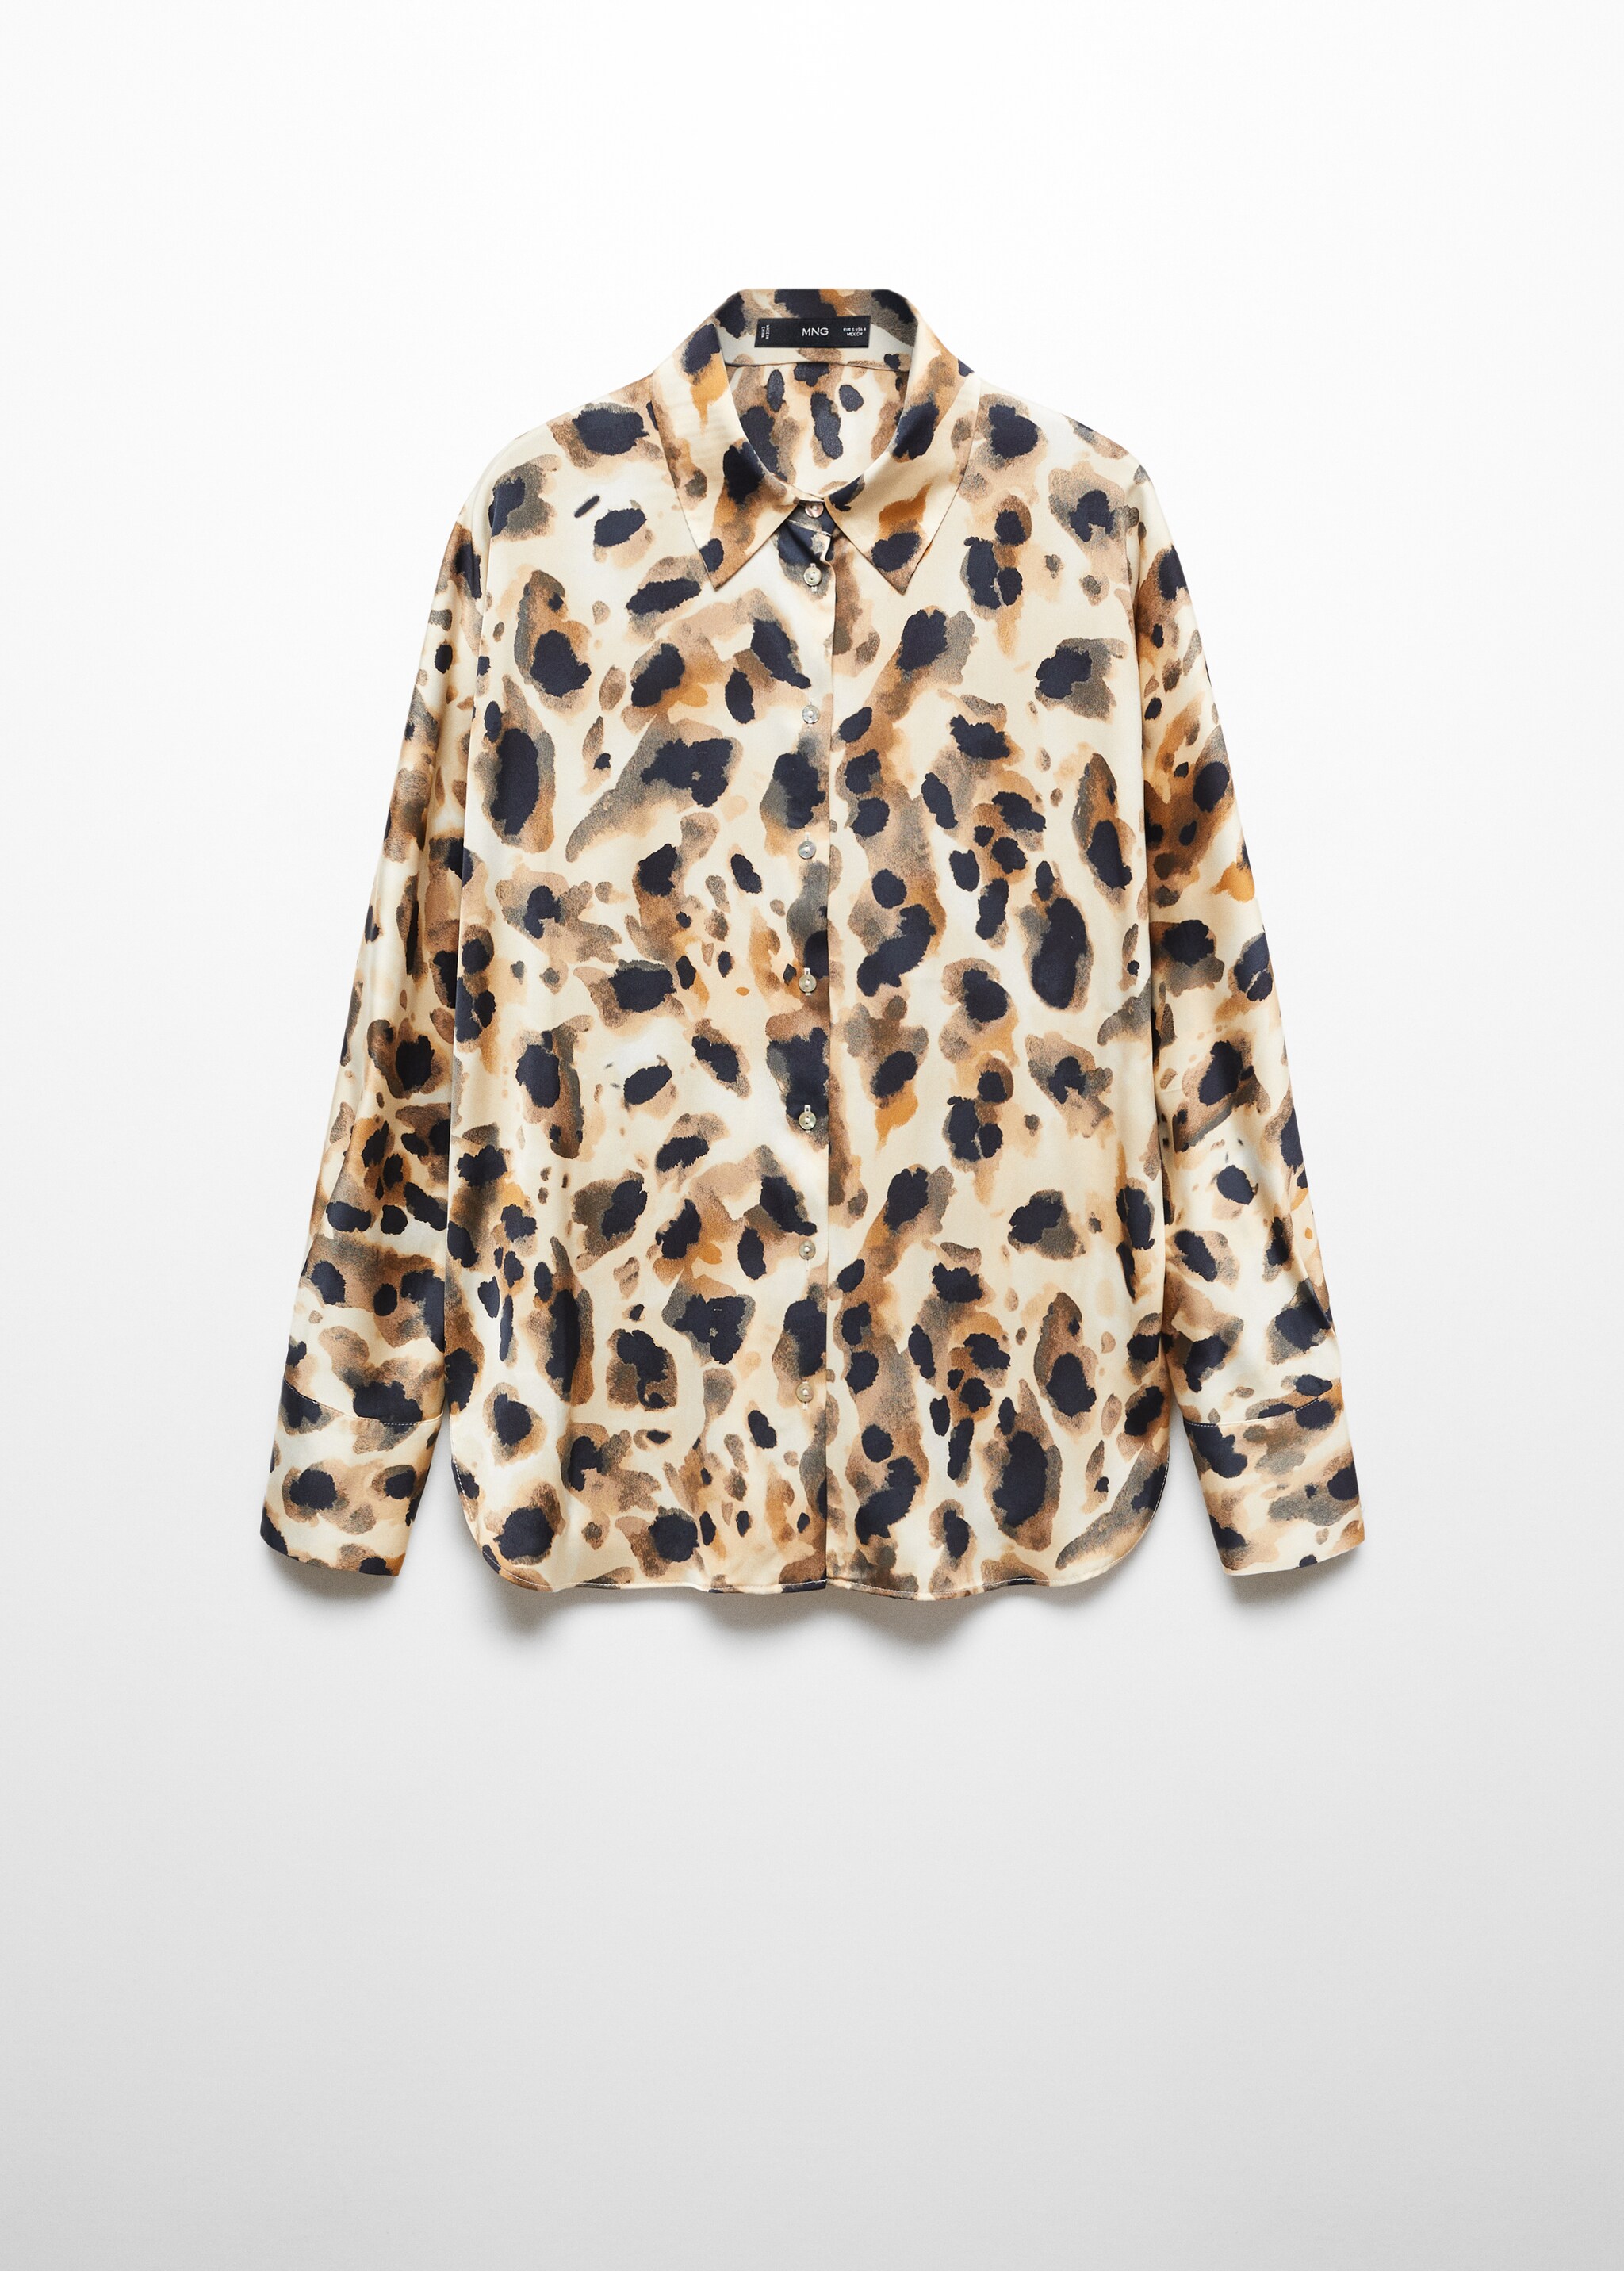 Camicia raso leopardo - Articolo senza modello